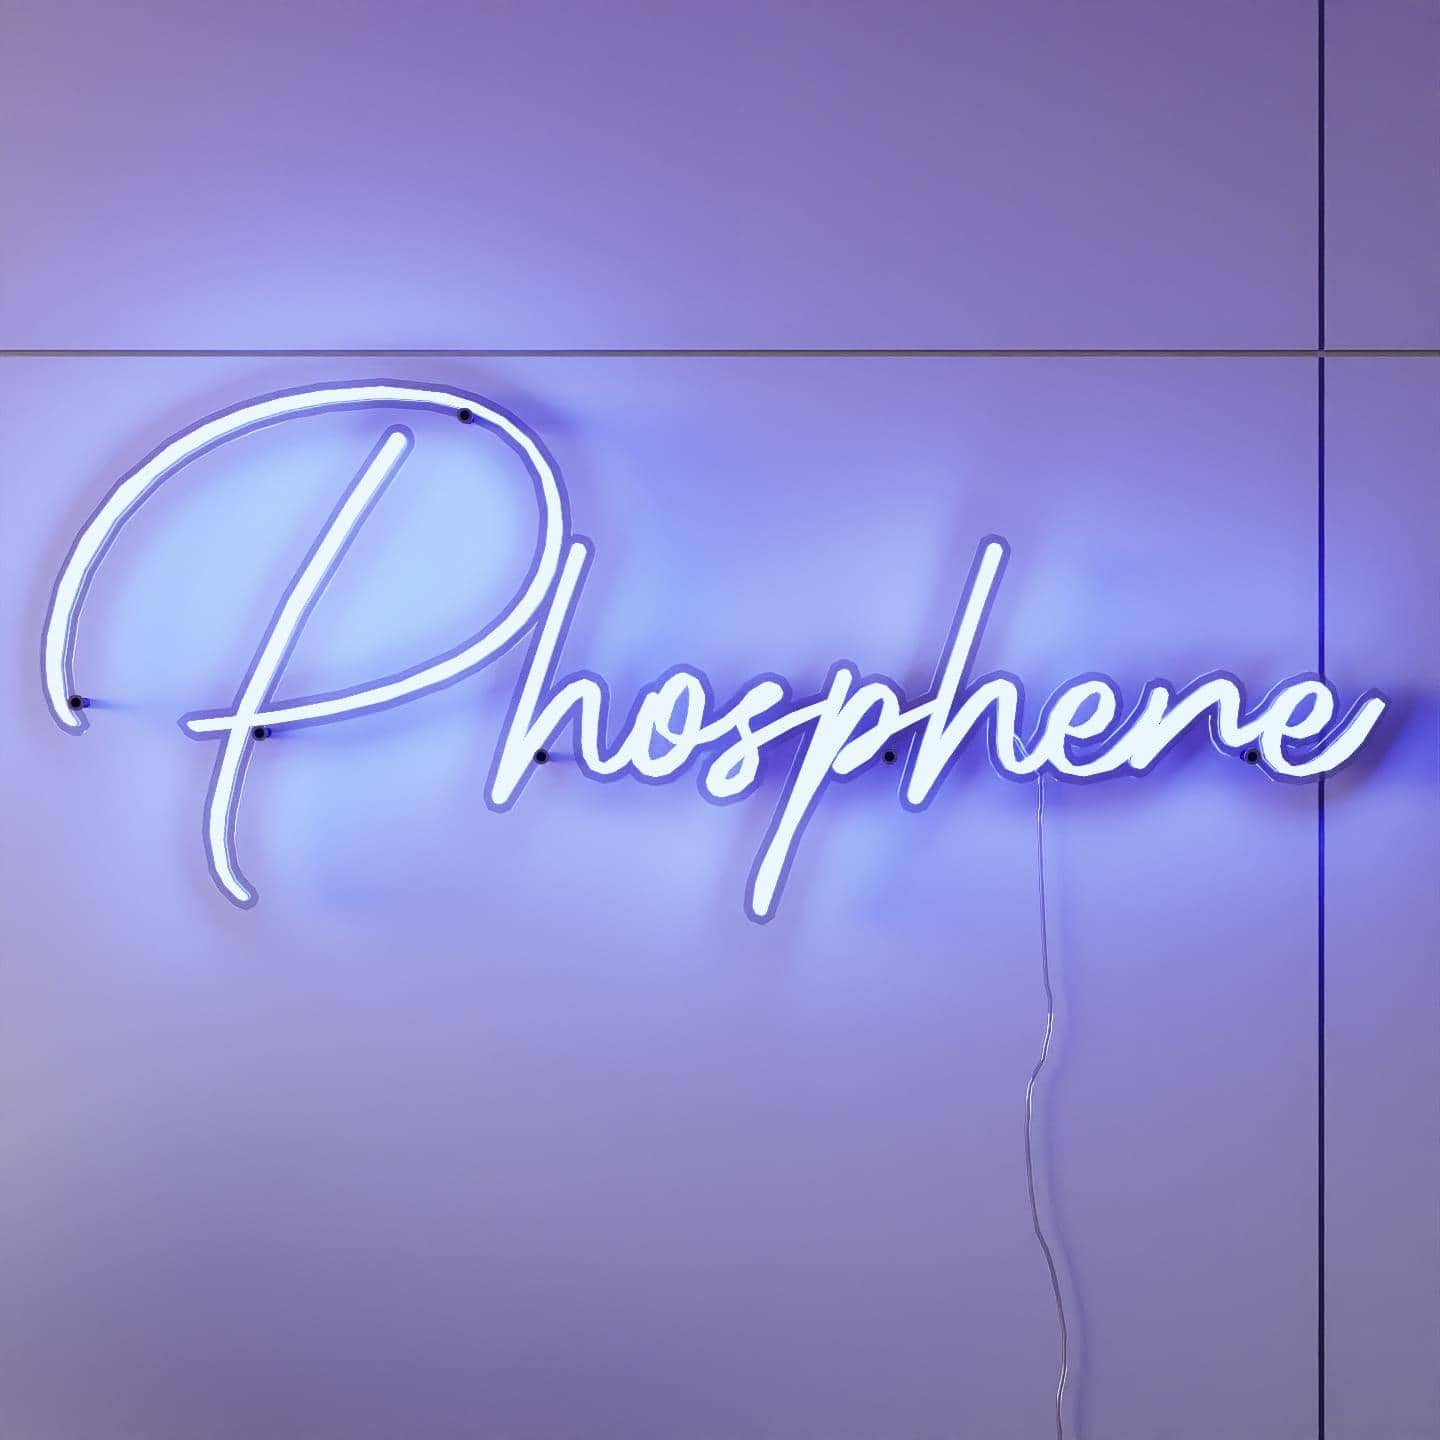 LED Neon Sign | Phosphene - NeonsignLife